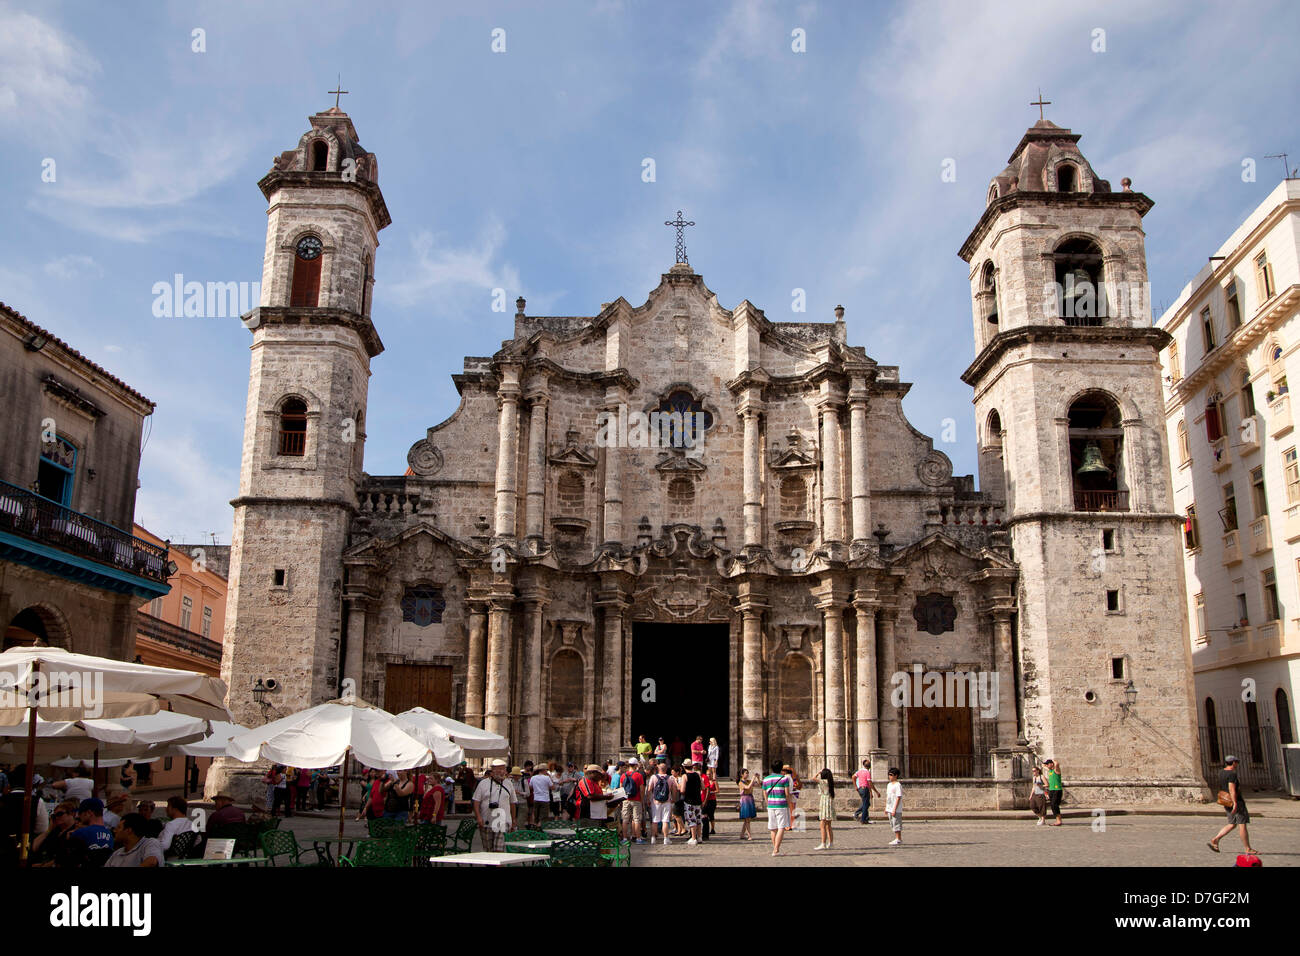 La cathédrale Catedral de San Cristobal sur la place Plaza de la Catedral de la vieille Havane La Habana Vieja, La Havane, Cuba, Caribbea Banque D'Images